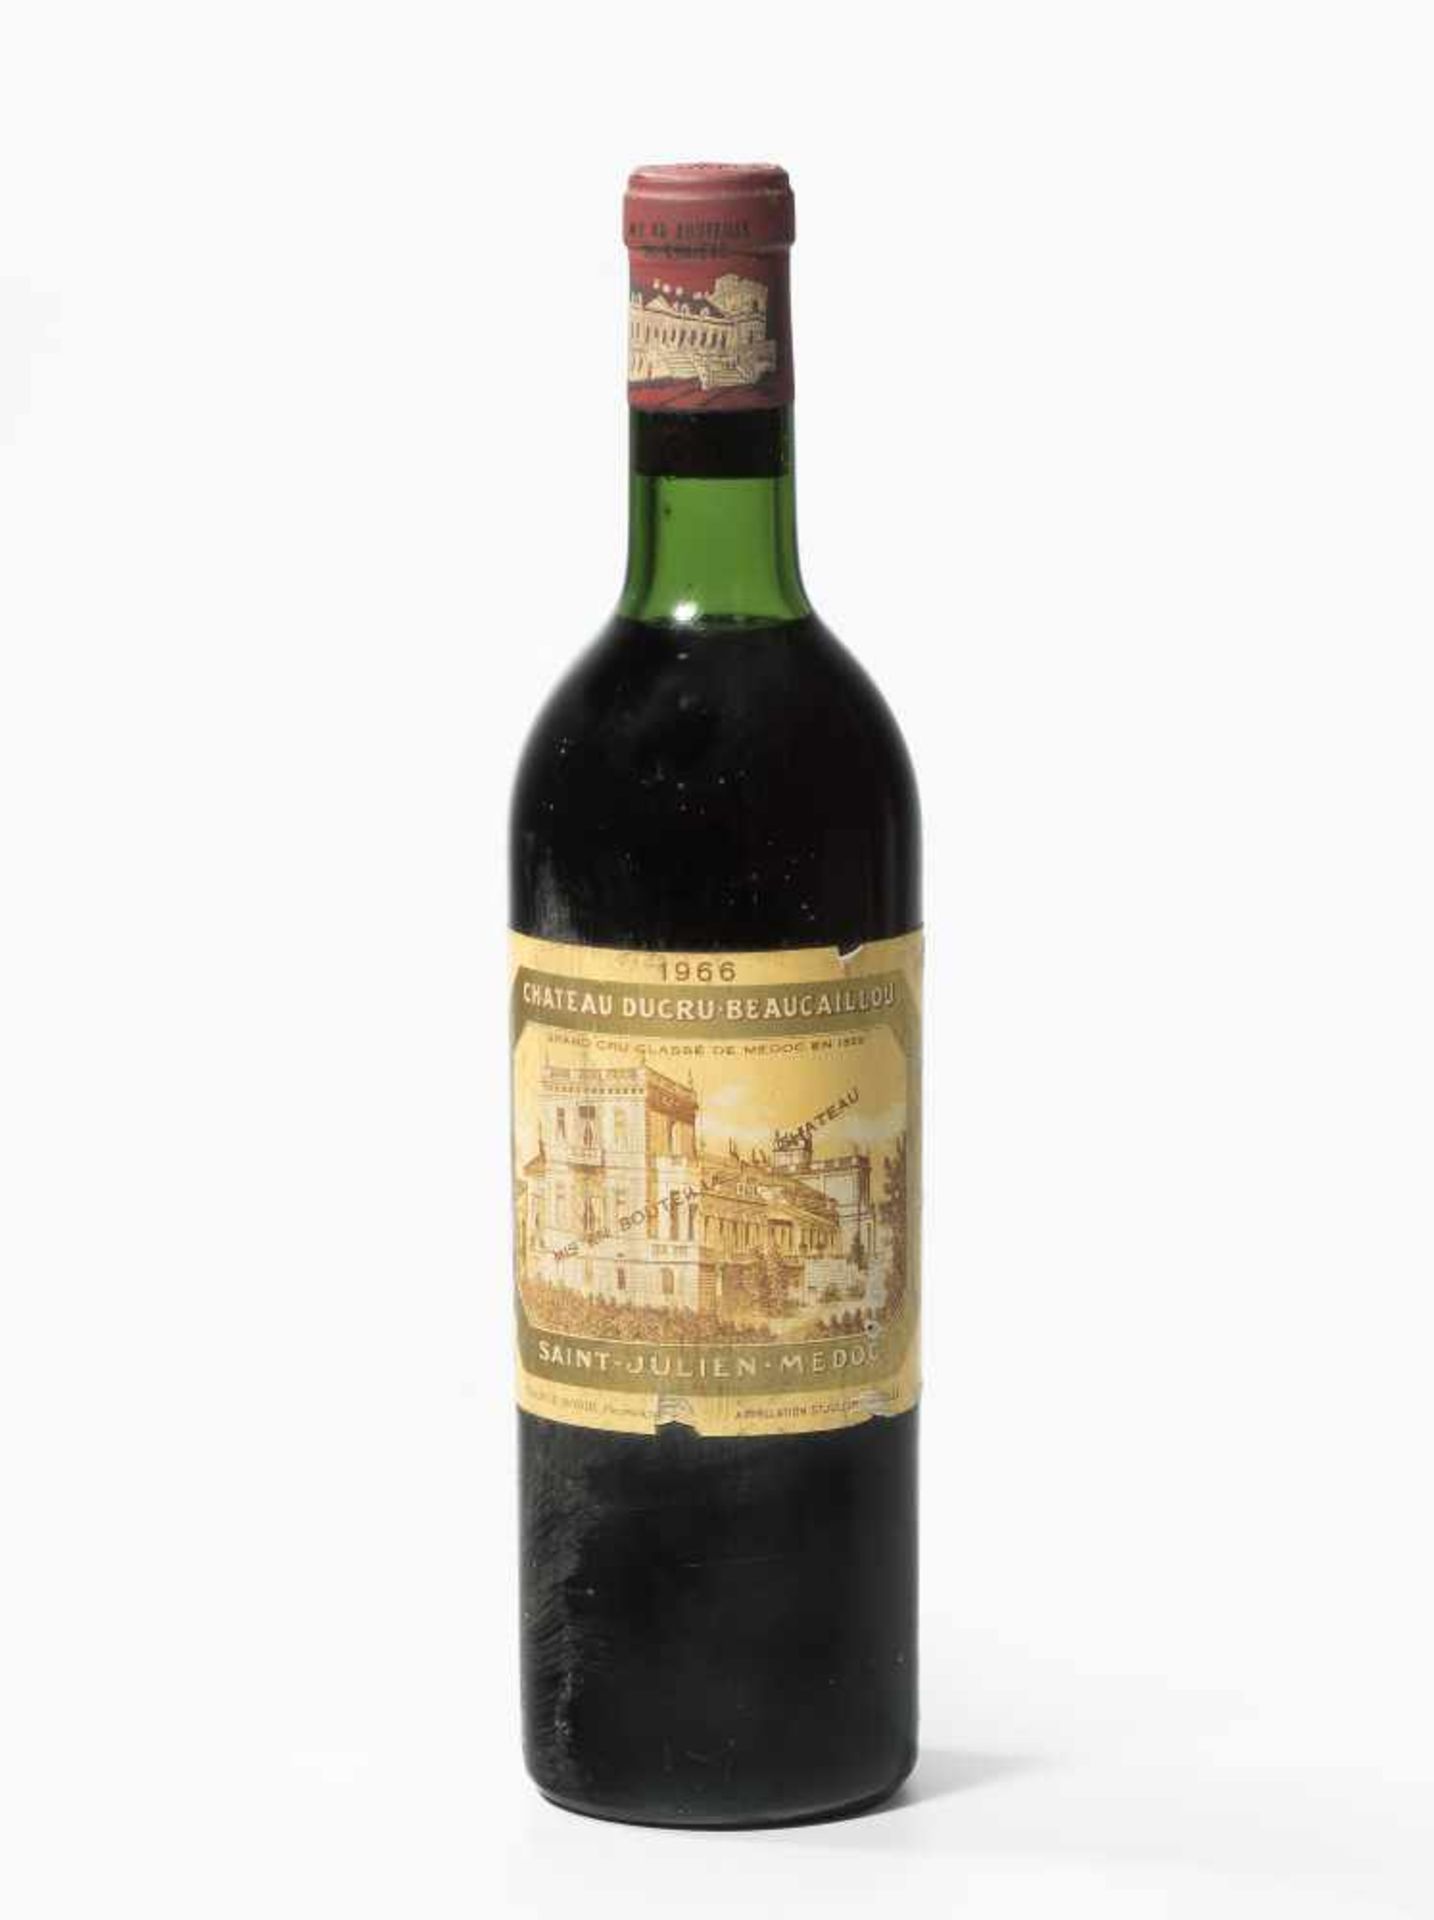 Chateau Ducru Beaucaillou1966. 2eme Grand Cru. St. Julien. 1 Flasche.- - -20.00 % buyer's premium on